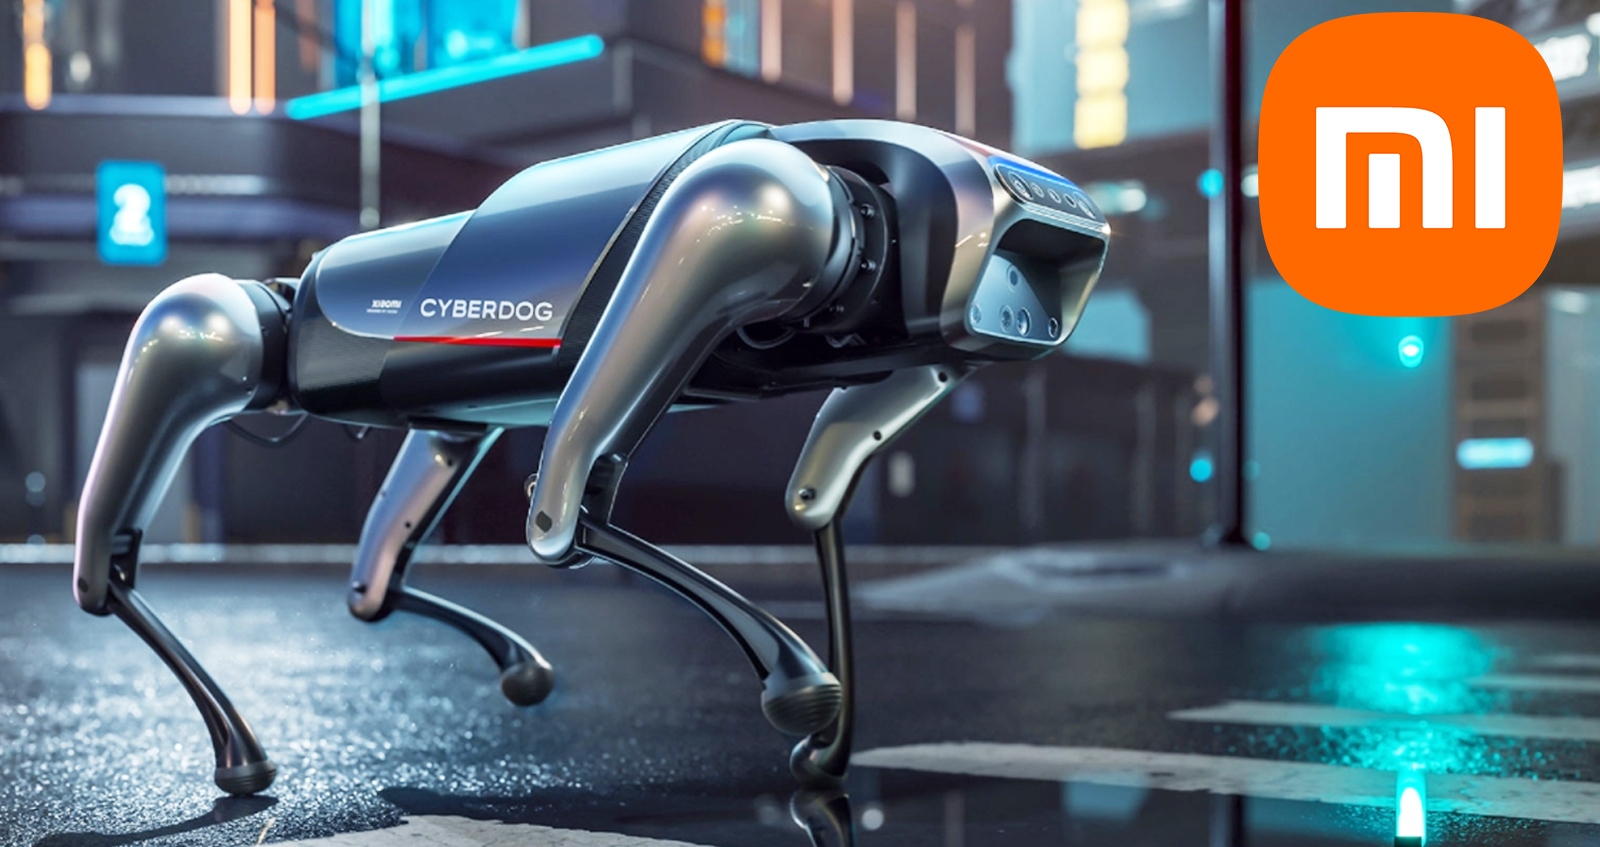 Xiaomi เปิดตัว CyberDog หมาหุ่นยนต์อัจฉริยะ ราคา 51,000 บาท